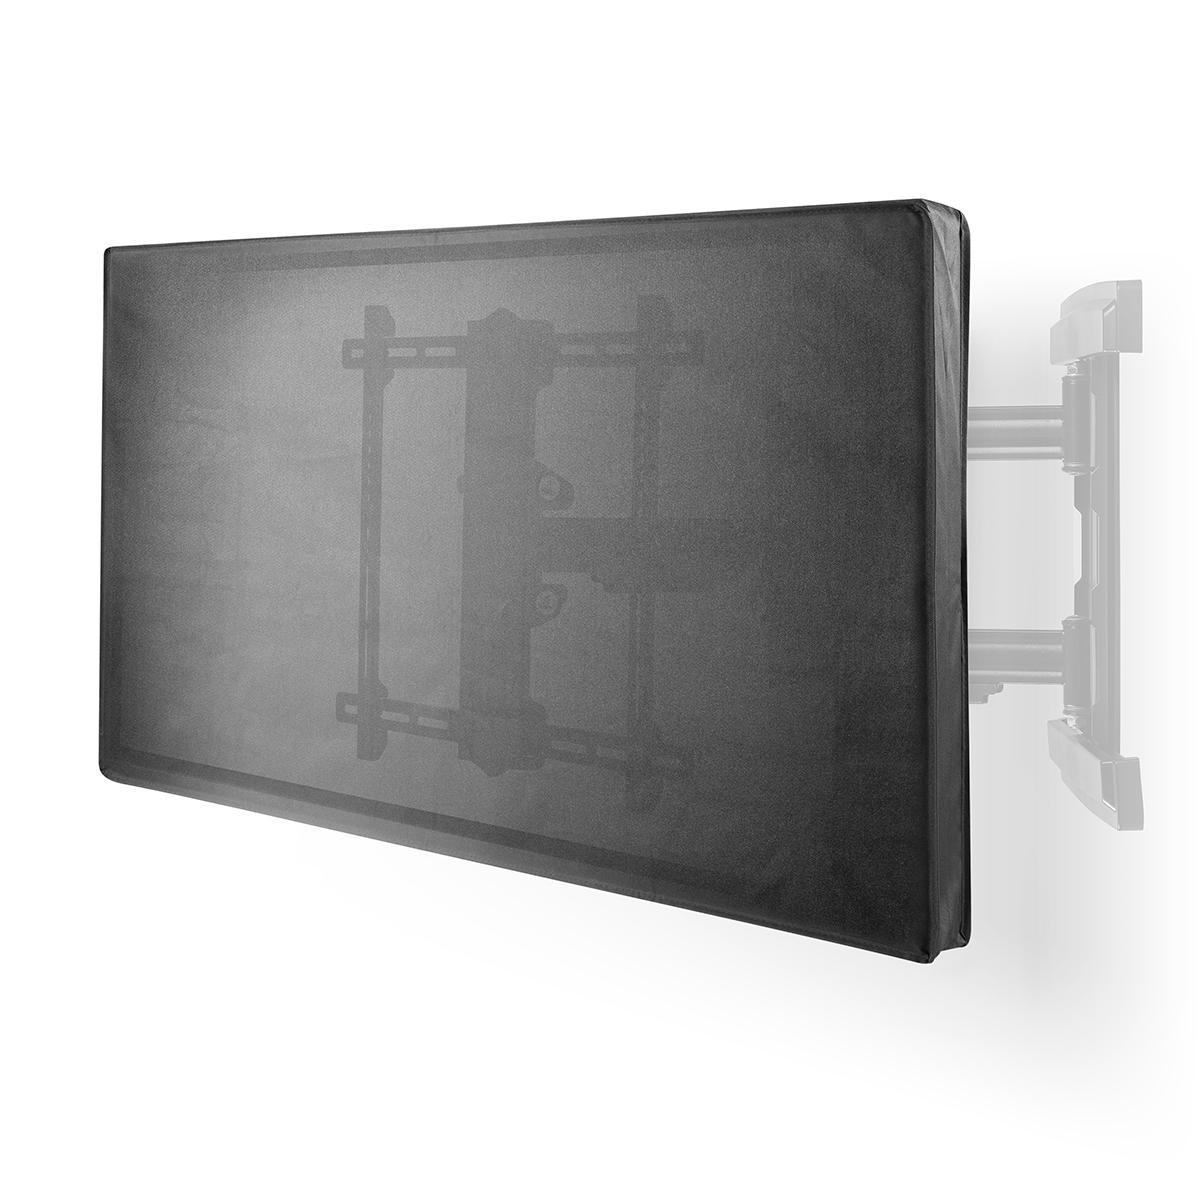 MNNE Outdoor-TV-Abdeckung LCD LED TV Universeller wasserdichter wetterfest und staubdicht TV-Schirm-Schutz für die meisten TV-Möbel und Halterungen 24x19inch 